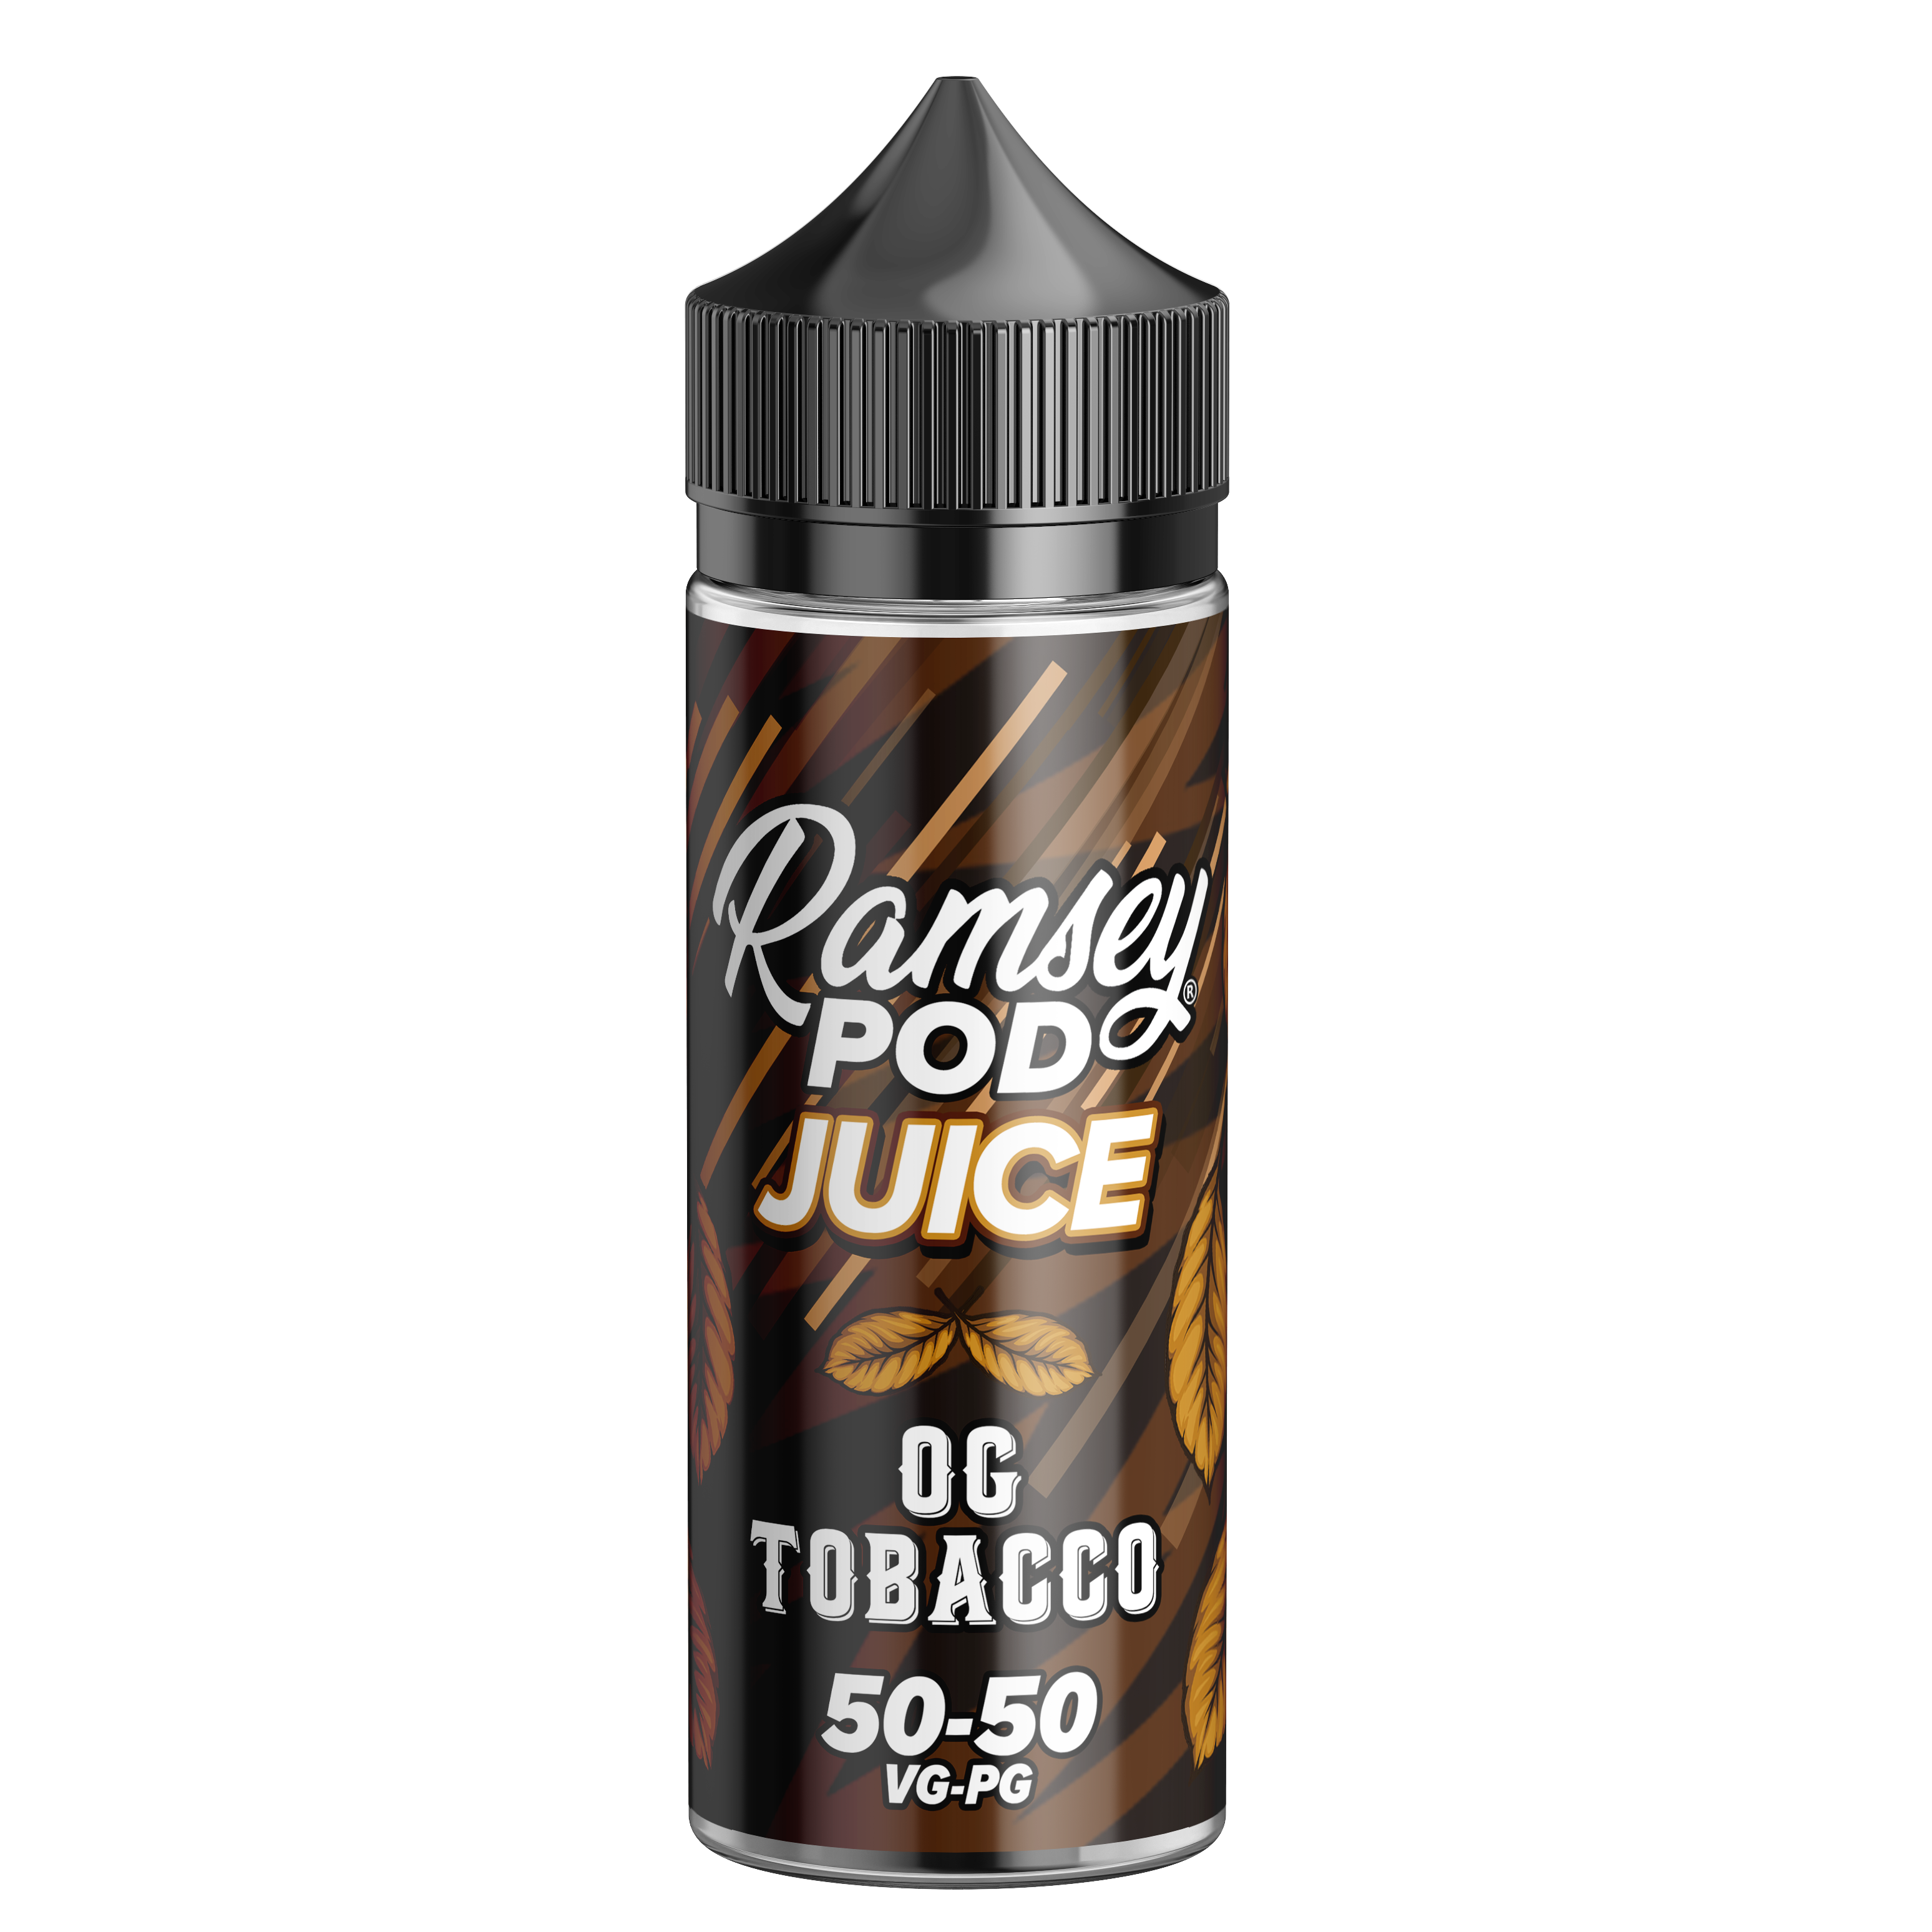 OG Tobacco E-Liquid by Ramsey E-Liquids - Shortfills UK